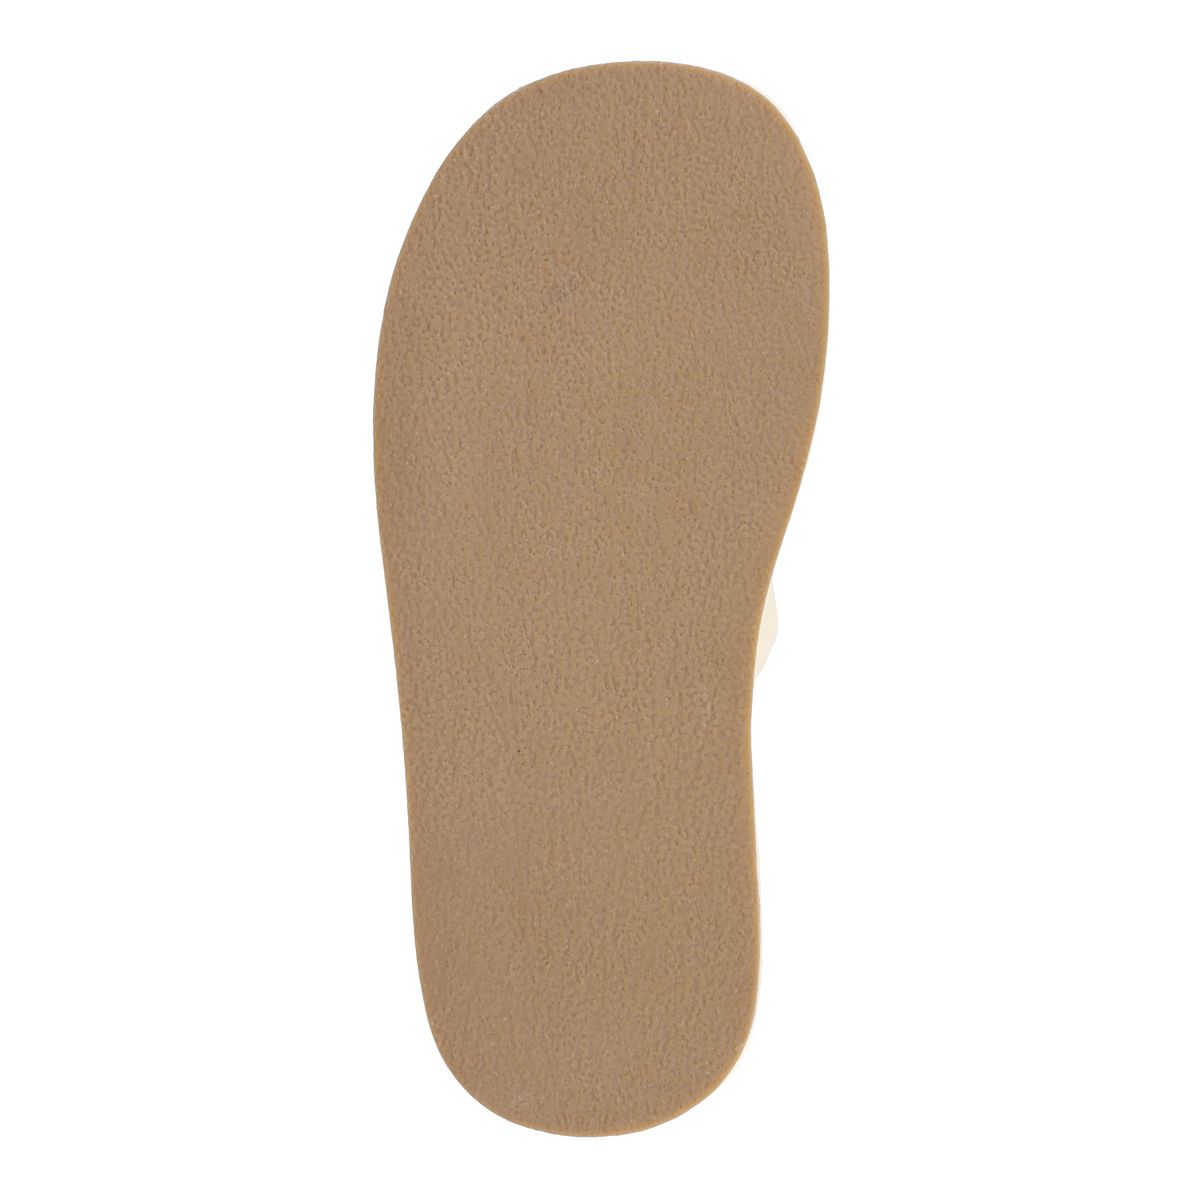 Journee Collection Denrie Tru Comfort Foam Women's Platform Slide Sandals